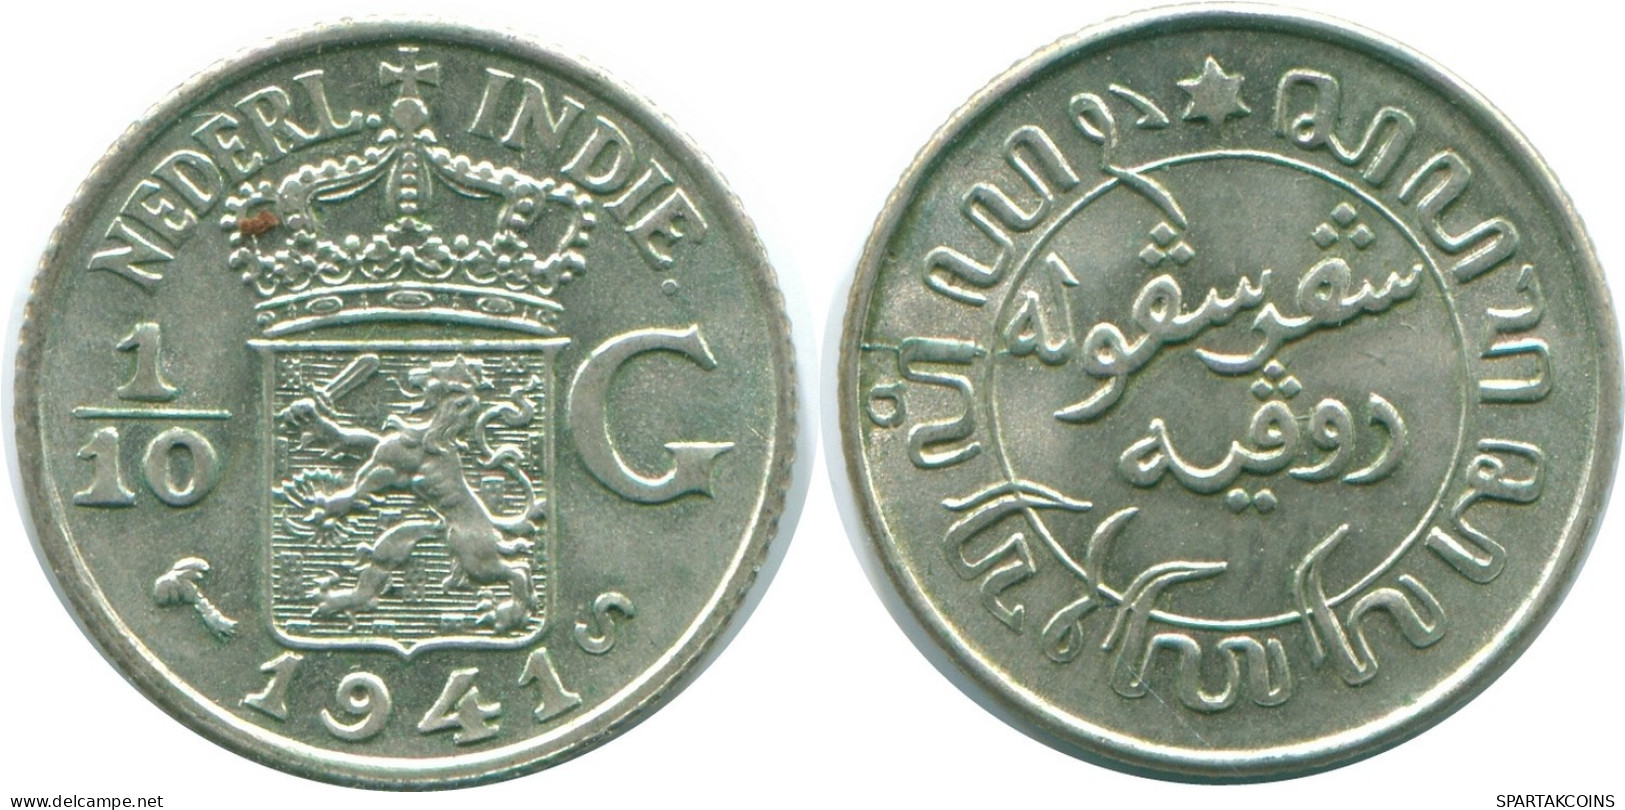 1/10 GULDEN 1941 S NIEDERLANDE OSTINDIEN SILBER Koloniale Münze #NL13684.3.D.A - Niederländisch-Indien